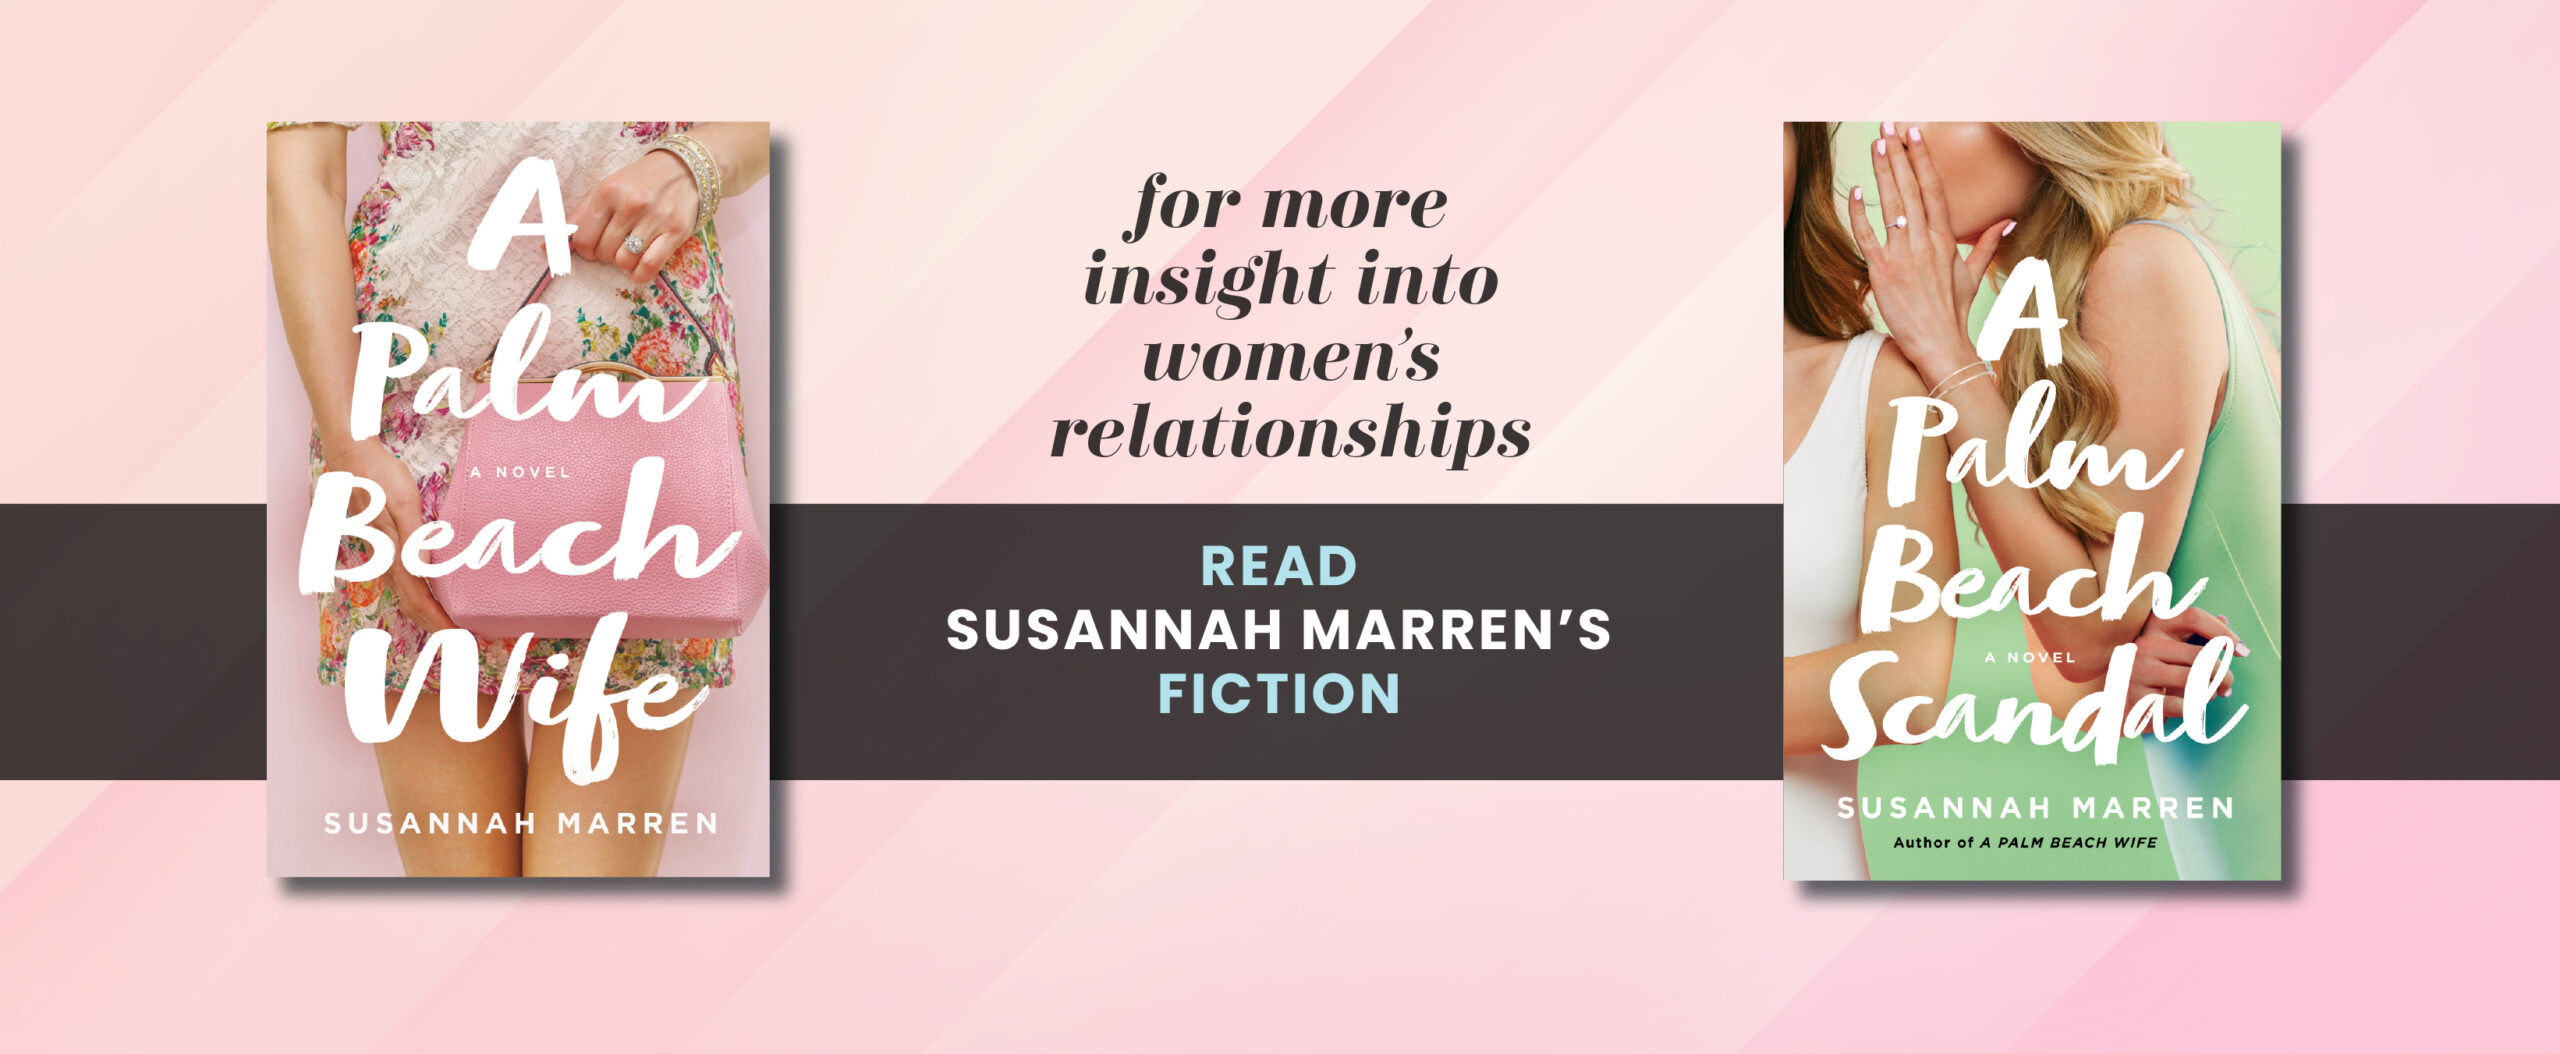 Susannah Marren's Fiction